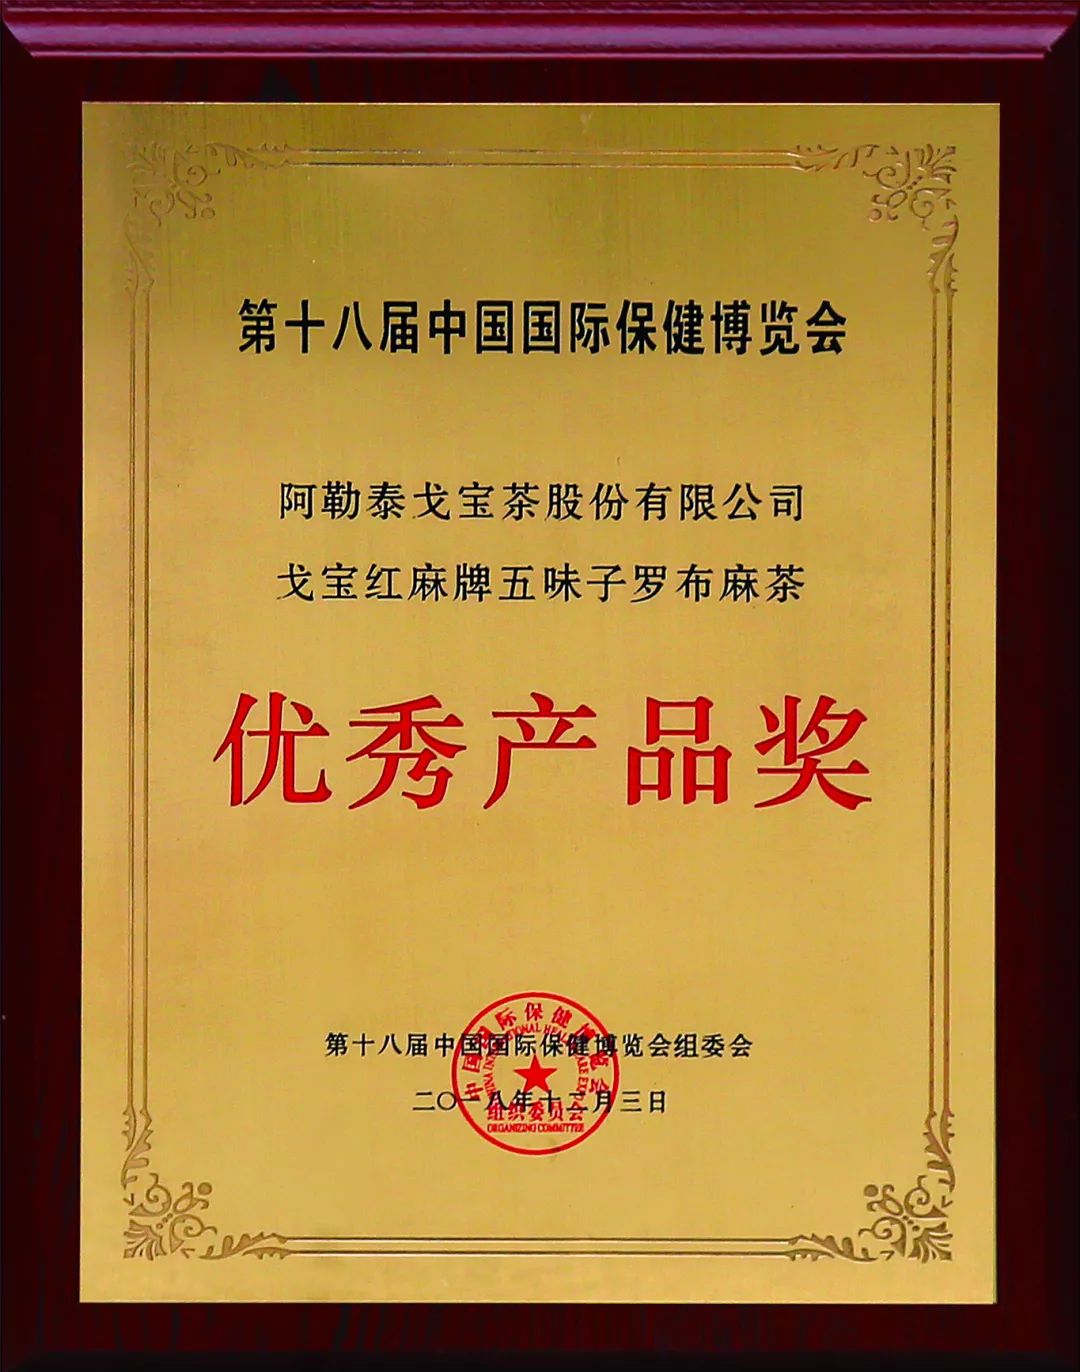 【戈宝红麻茶】在第18届中国国际保健博览会上荣获多项大奖(图6)